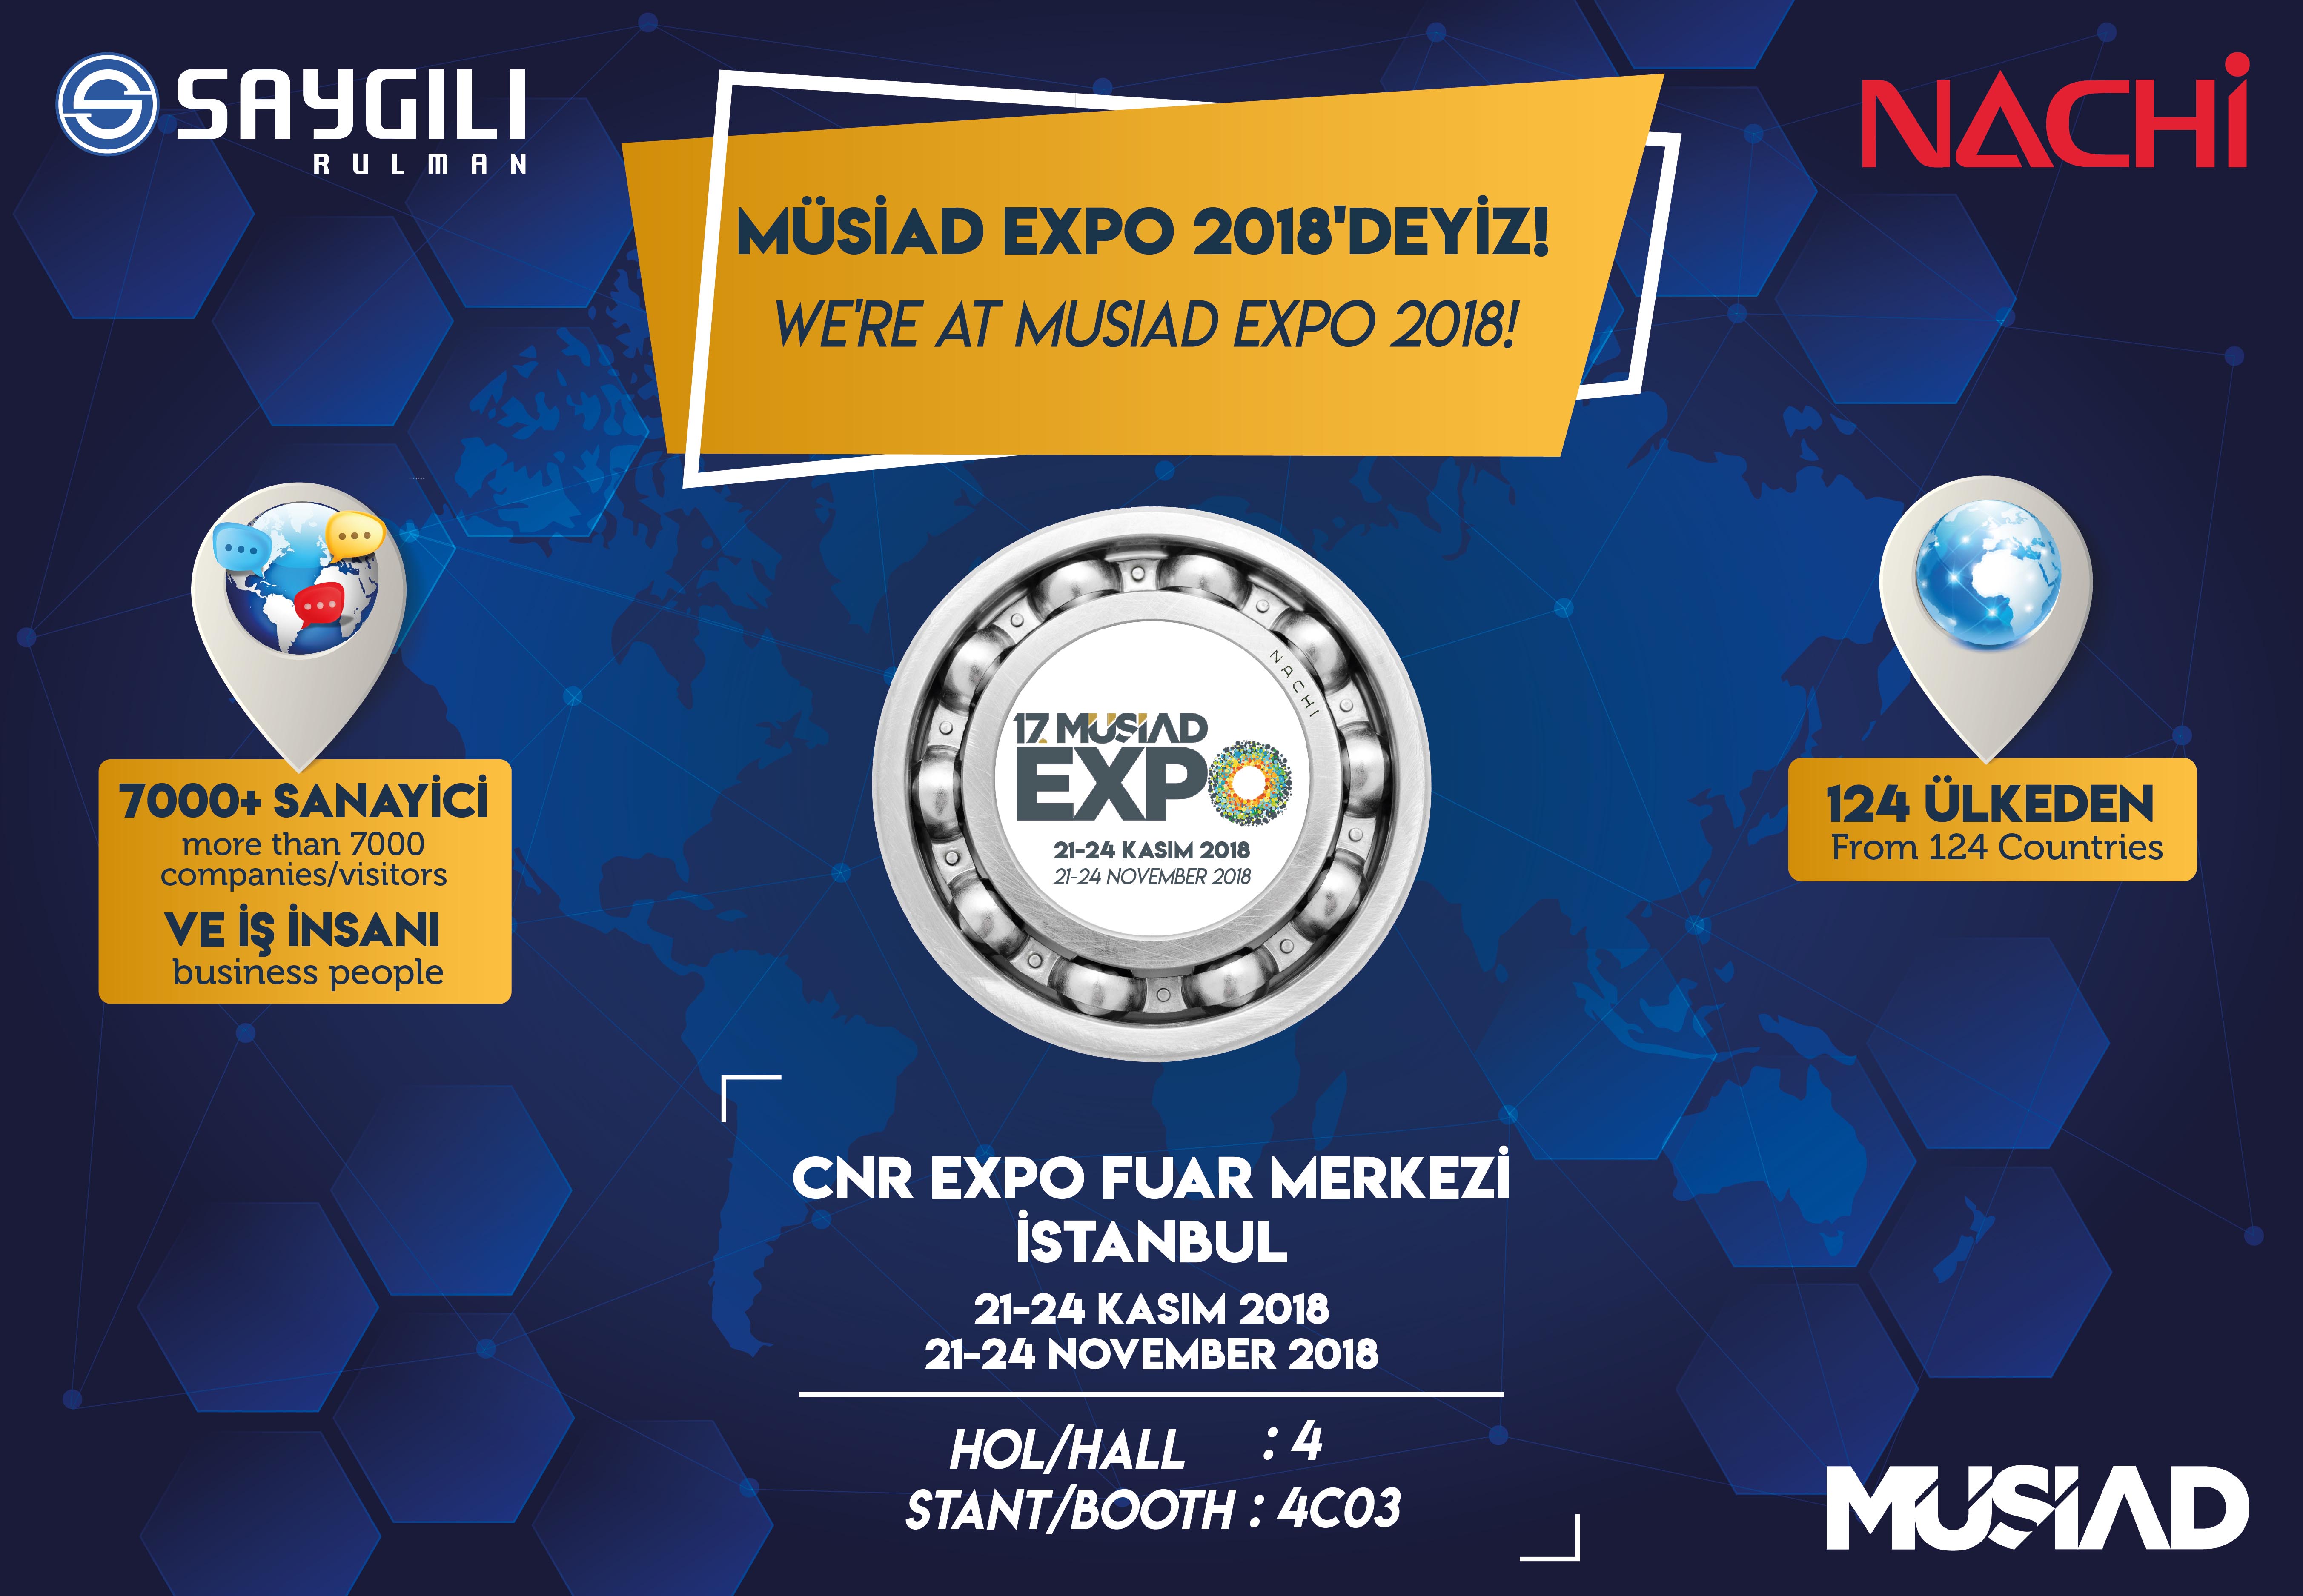 MÜSİAD EXPO 2018'DEYİZ!